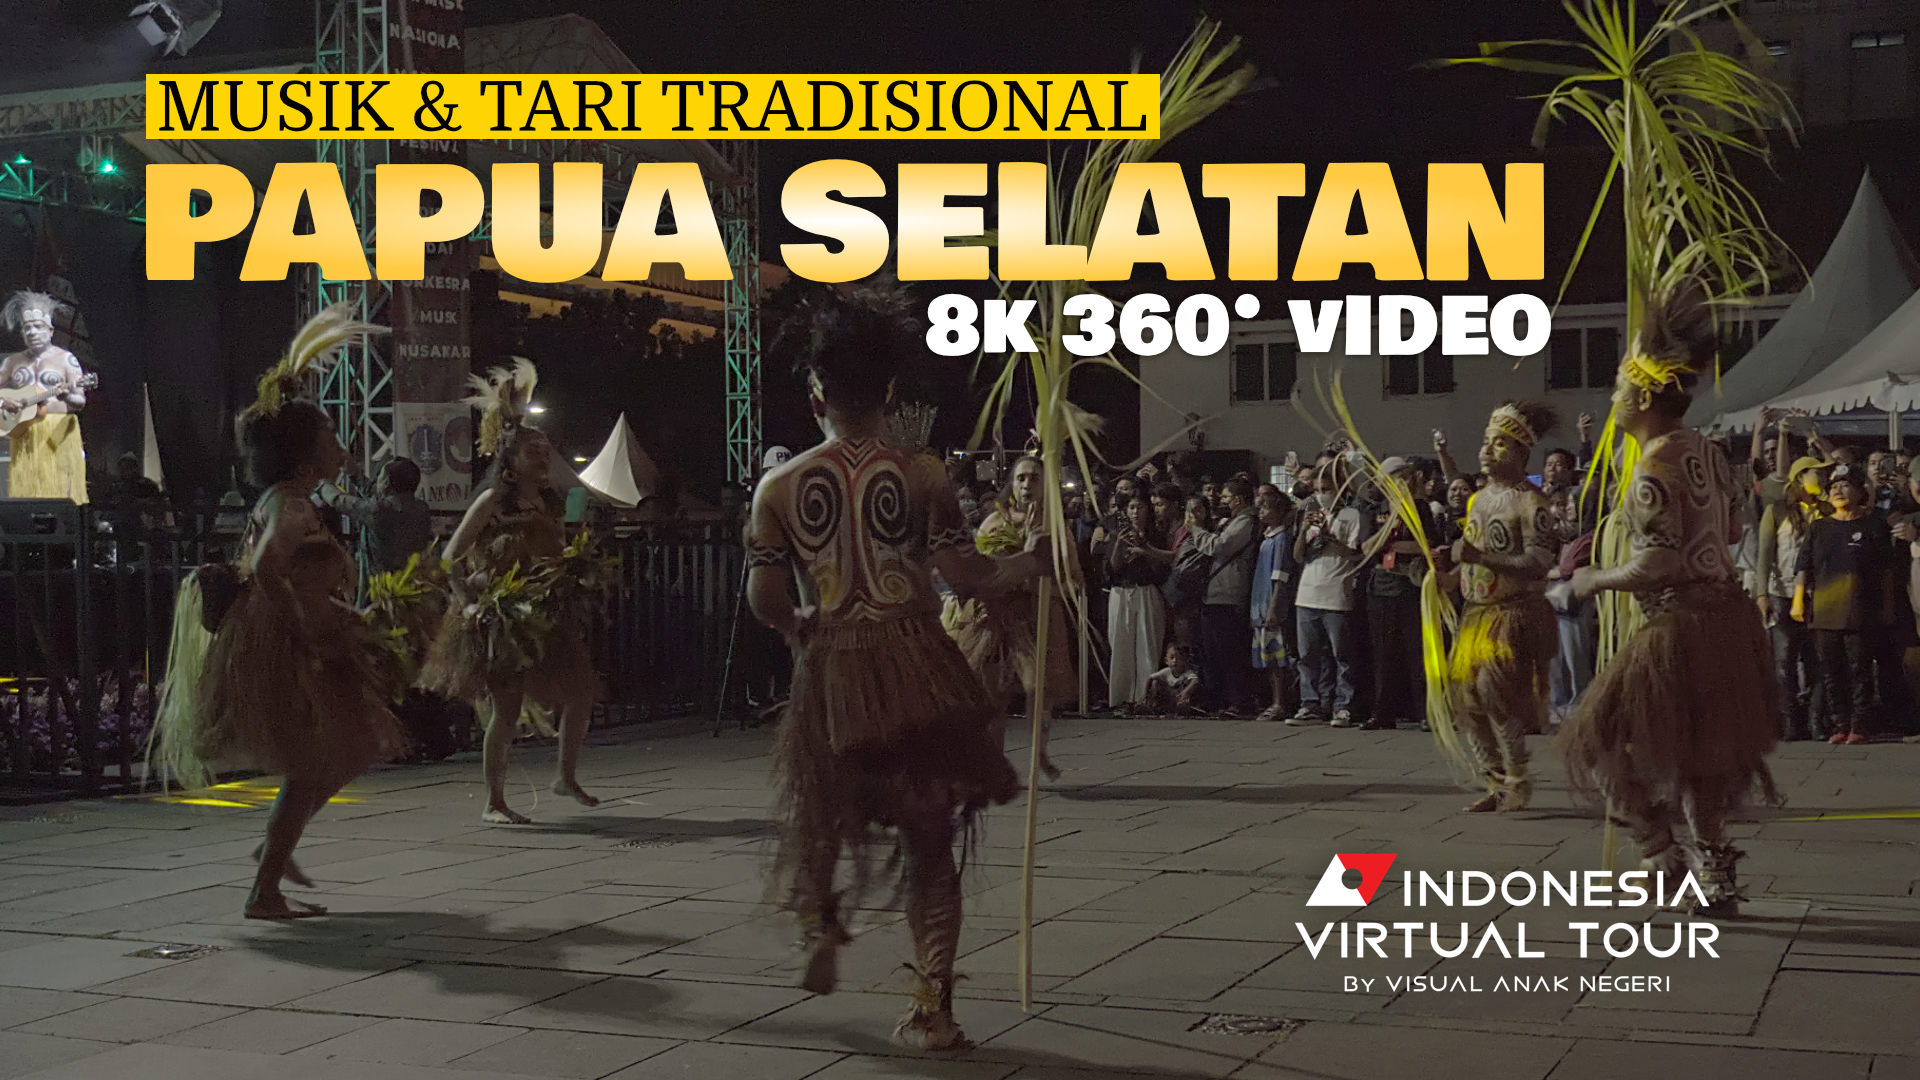 Penampilan Musik & Tari Tradisional Daerah Papua Selatan (8K 360 Video)